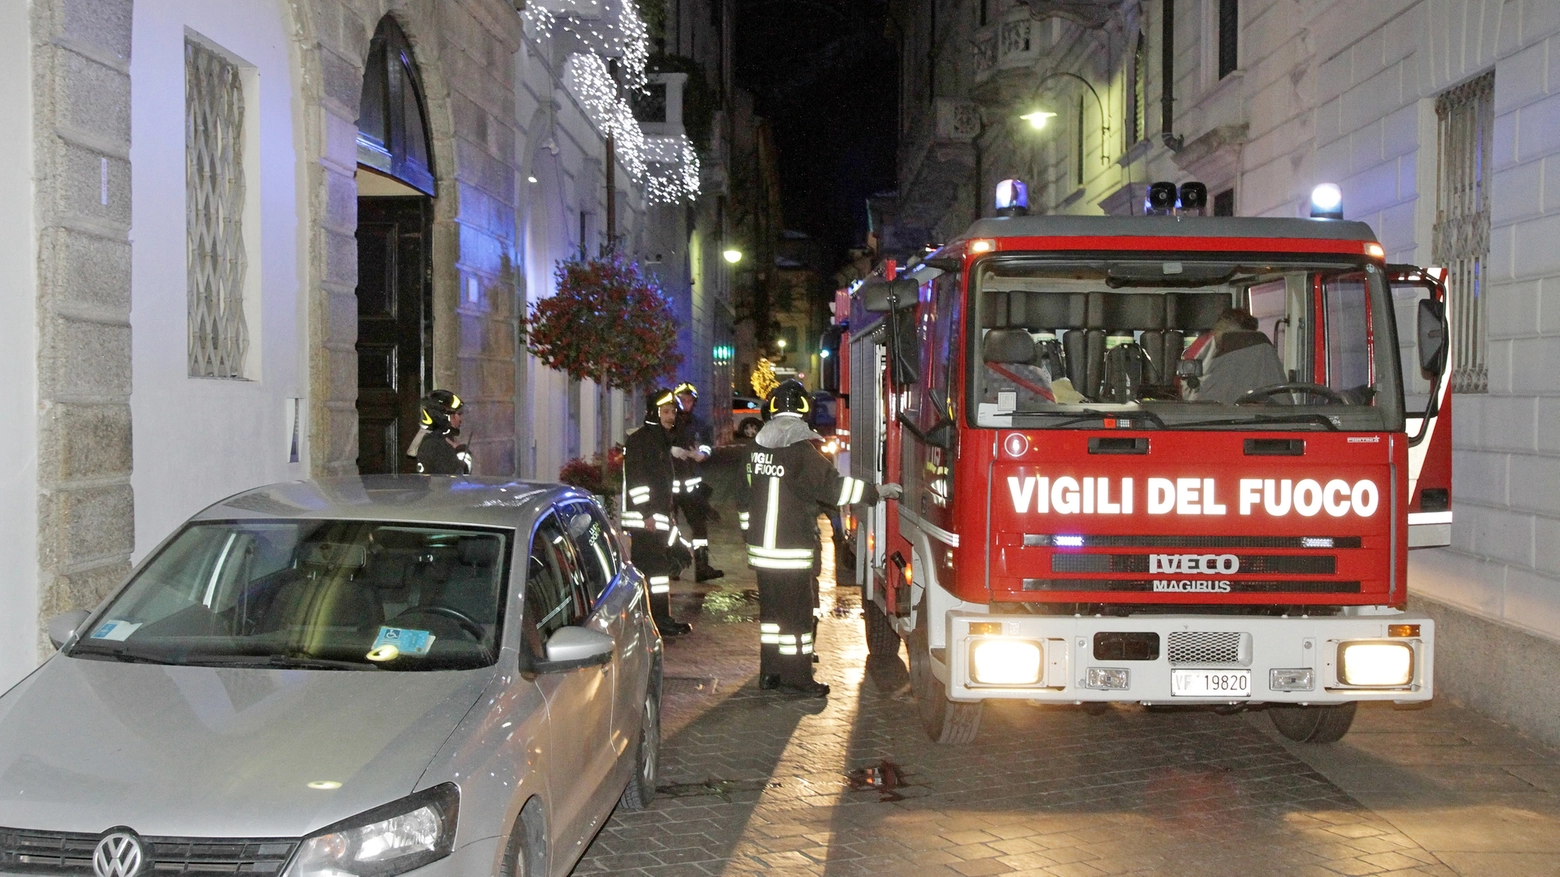 Vigili del fuoco in azione in via Giovio a Como